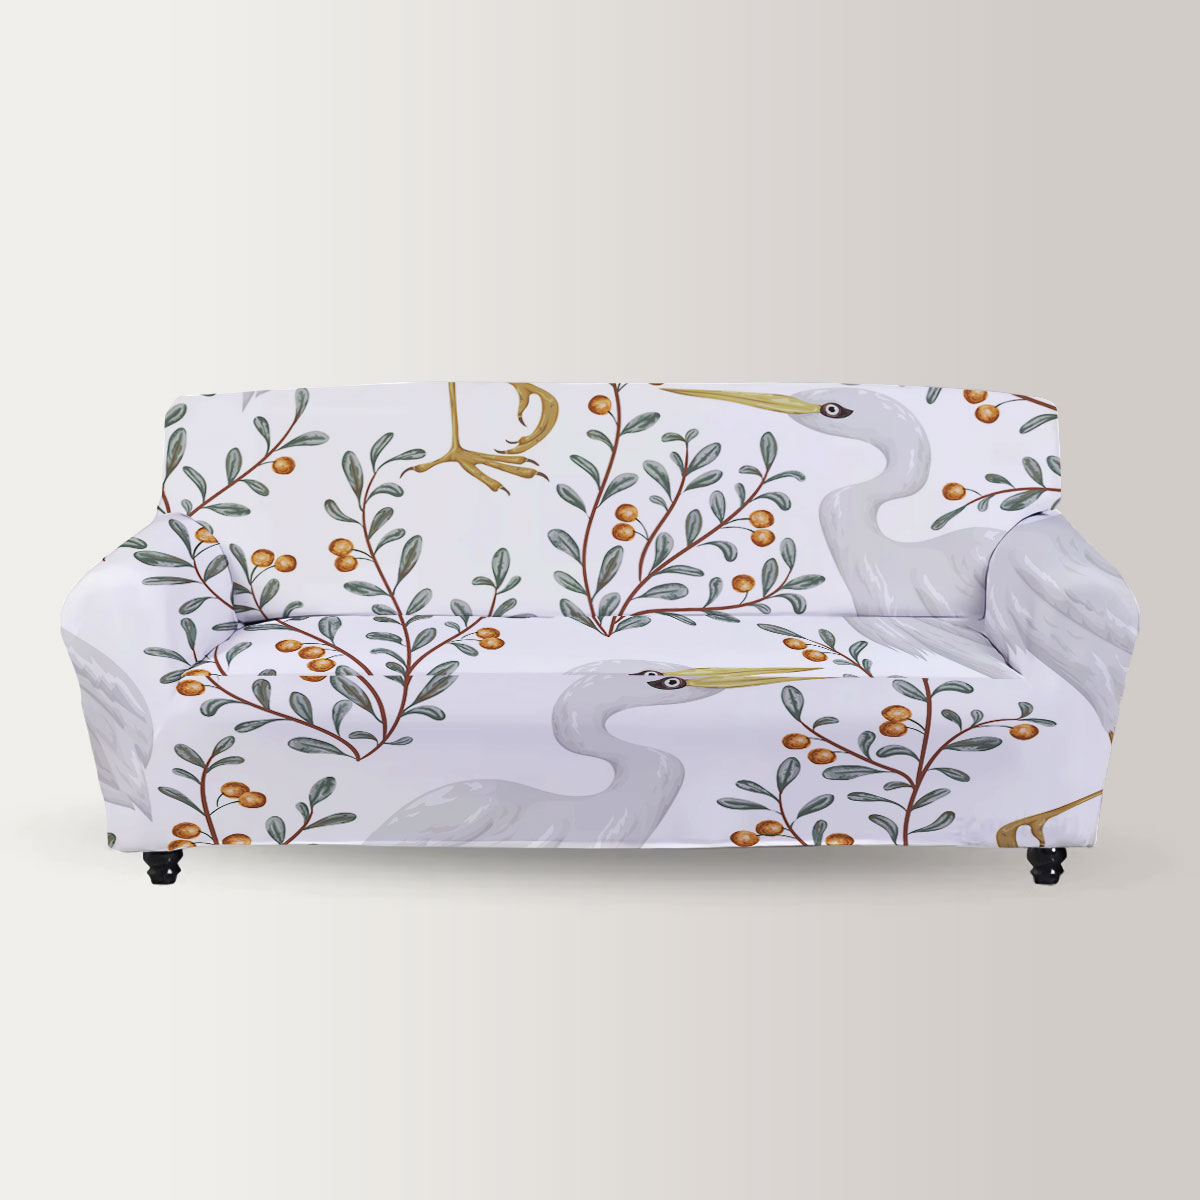 Cranberry Heron Sofa Cover